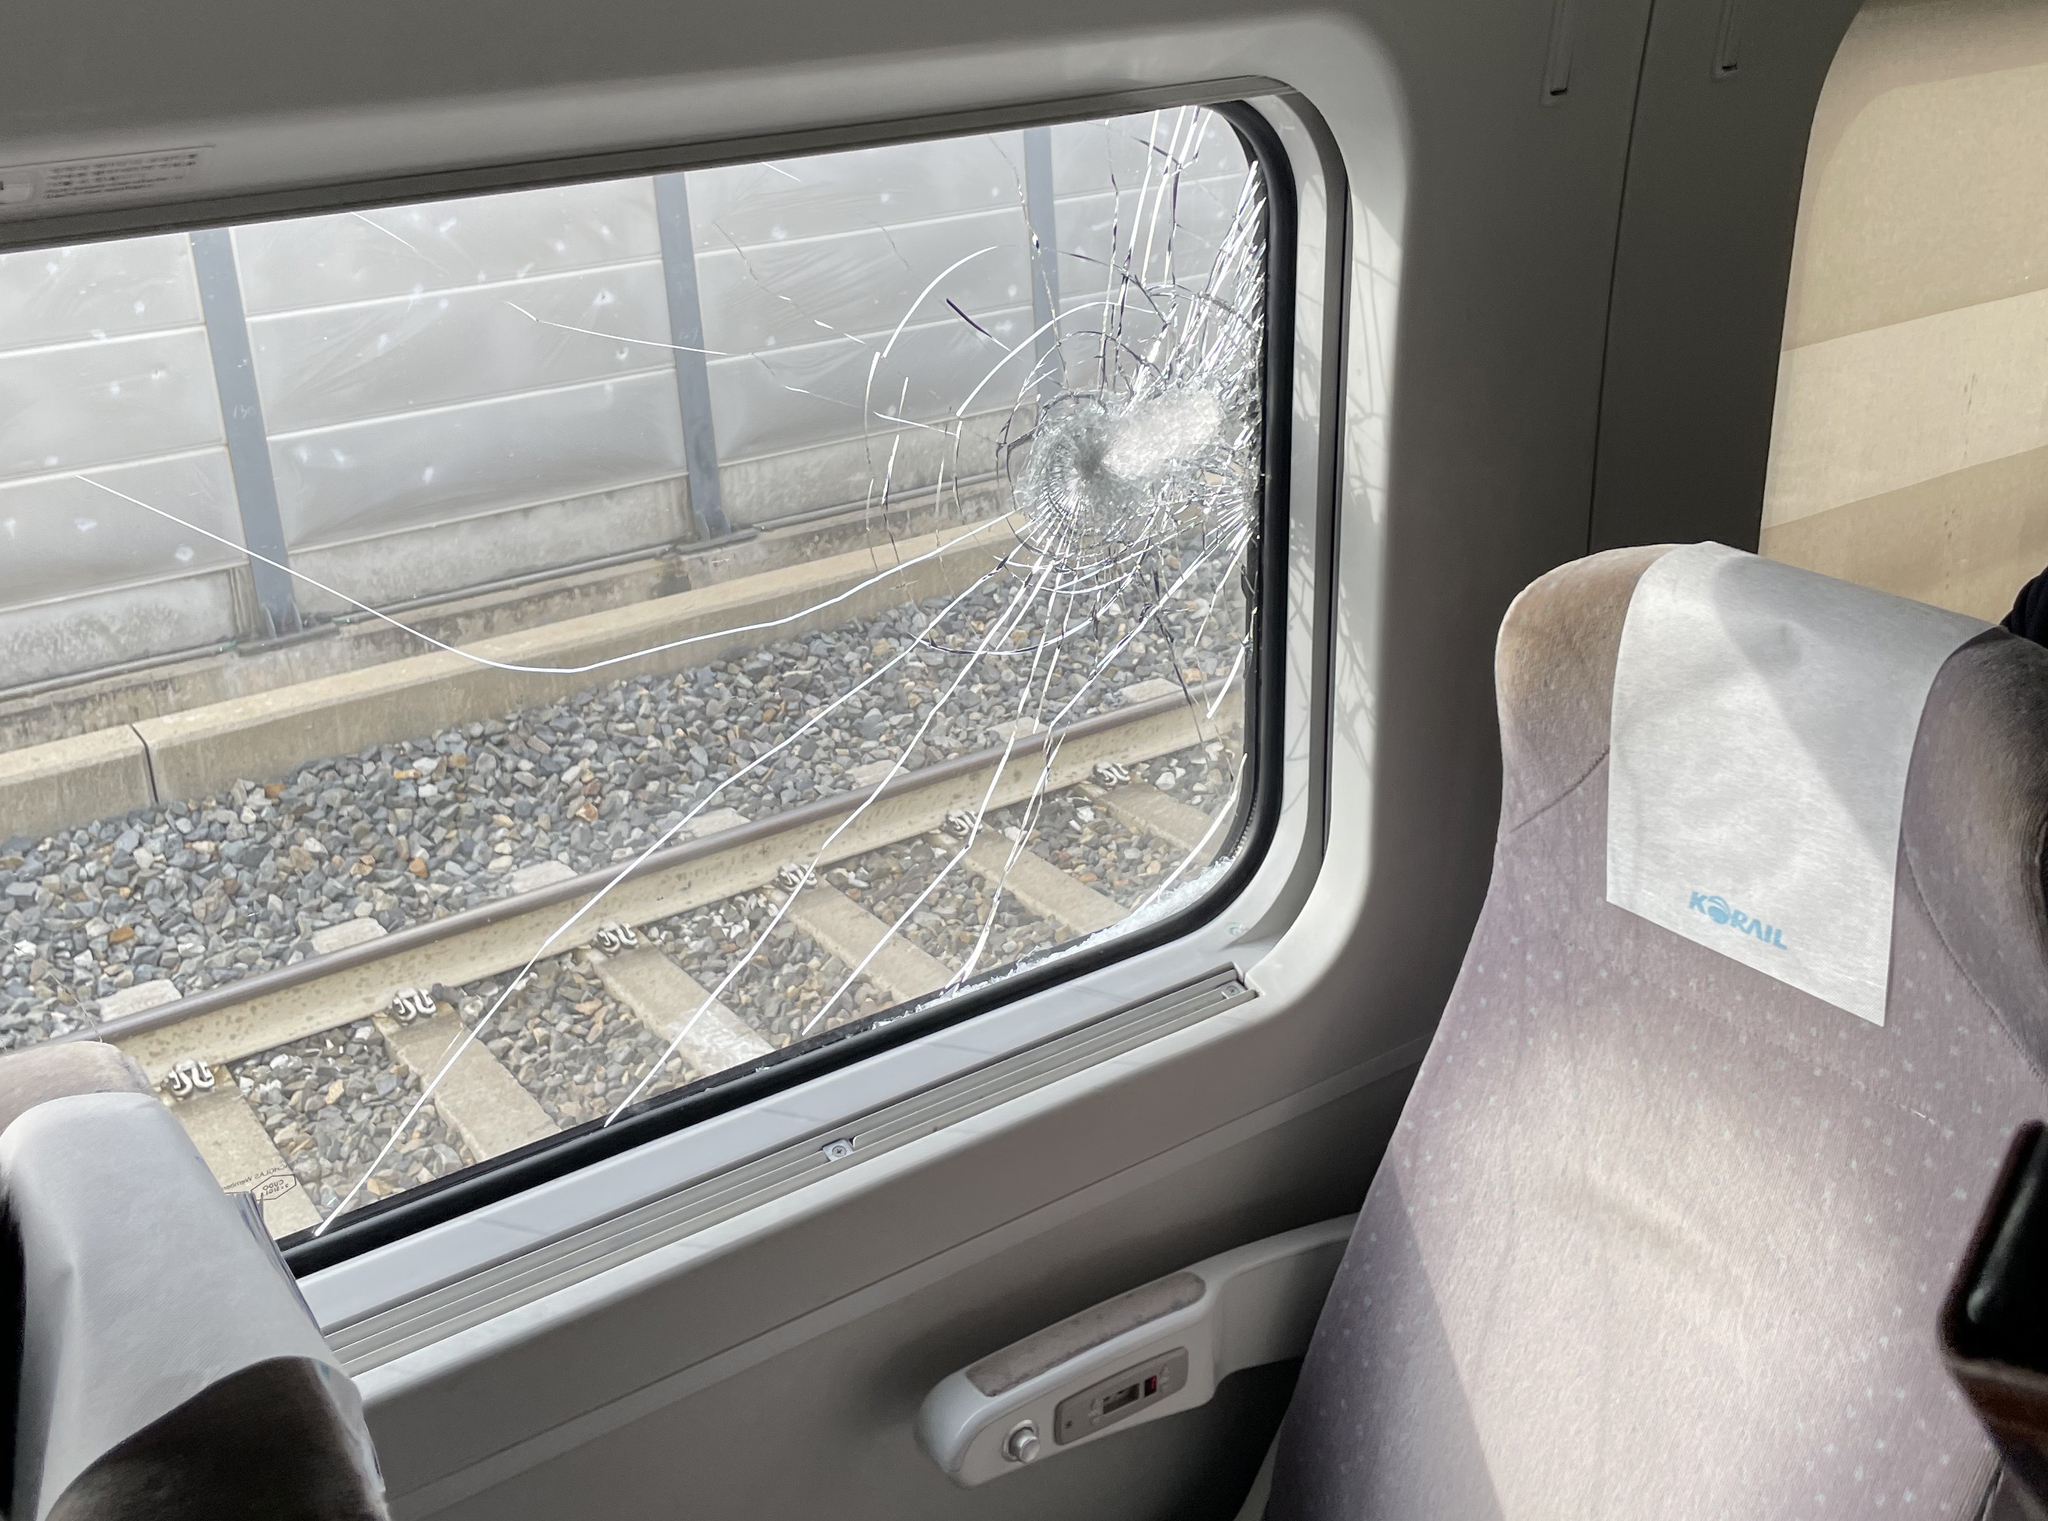 5일 충북 소방본부 등에 따르면 이날 낮 12시 46분께 서울에서 동대구로 가던 KTX-산천 열차가 철로를 이탈했다. 사고는 터널 내 철제구조물이 떨어지면서 열차를 추돌해 발생한 것으로 알려졌다. 사진은 깨진 KTX 열차 내부 모습. 연합뉴스